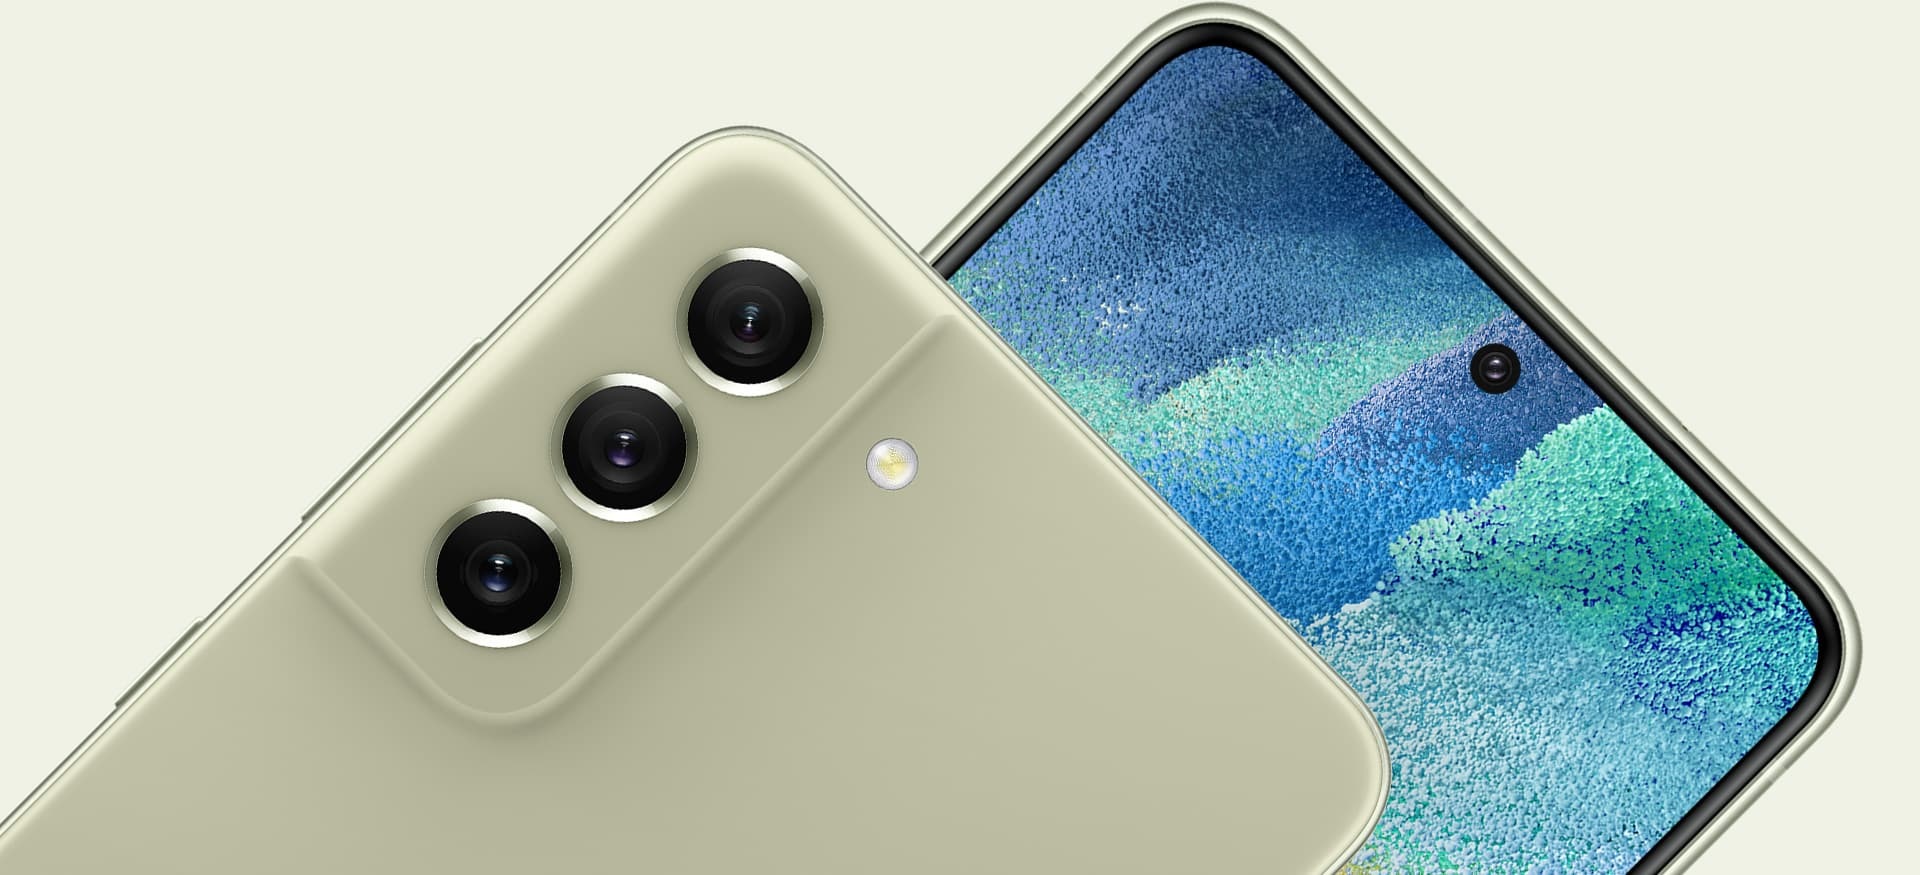 Zwei Galaxy S21 FE 5G Smartphones. Eines ist von hinten mit Fokus auf die Hauptkamera zu sehen, während das andere von vorne mit Fokus auf die Frontkamera zu sehen ist.